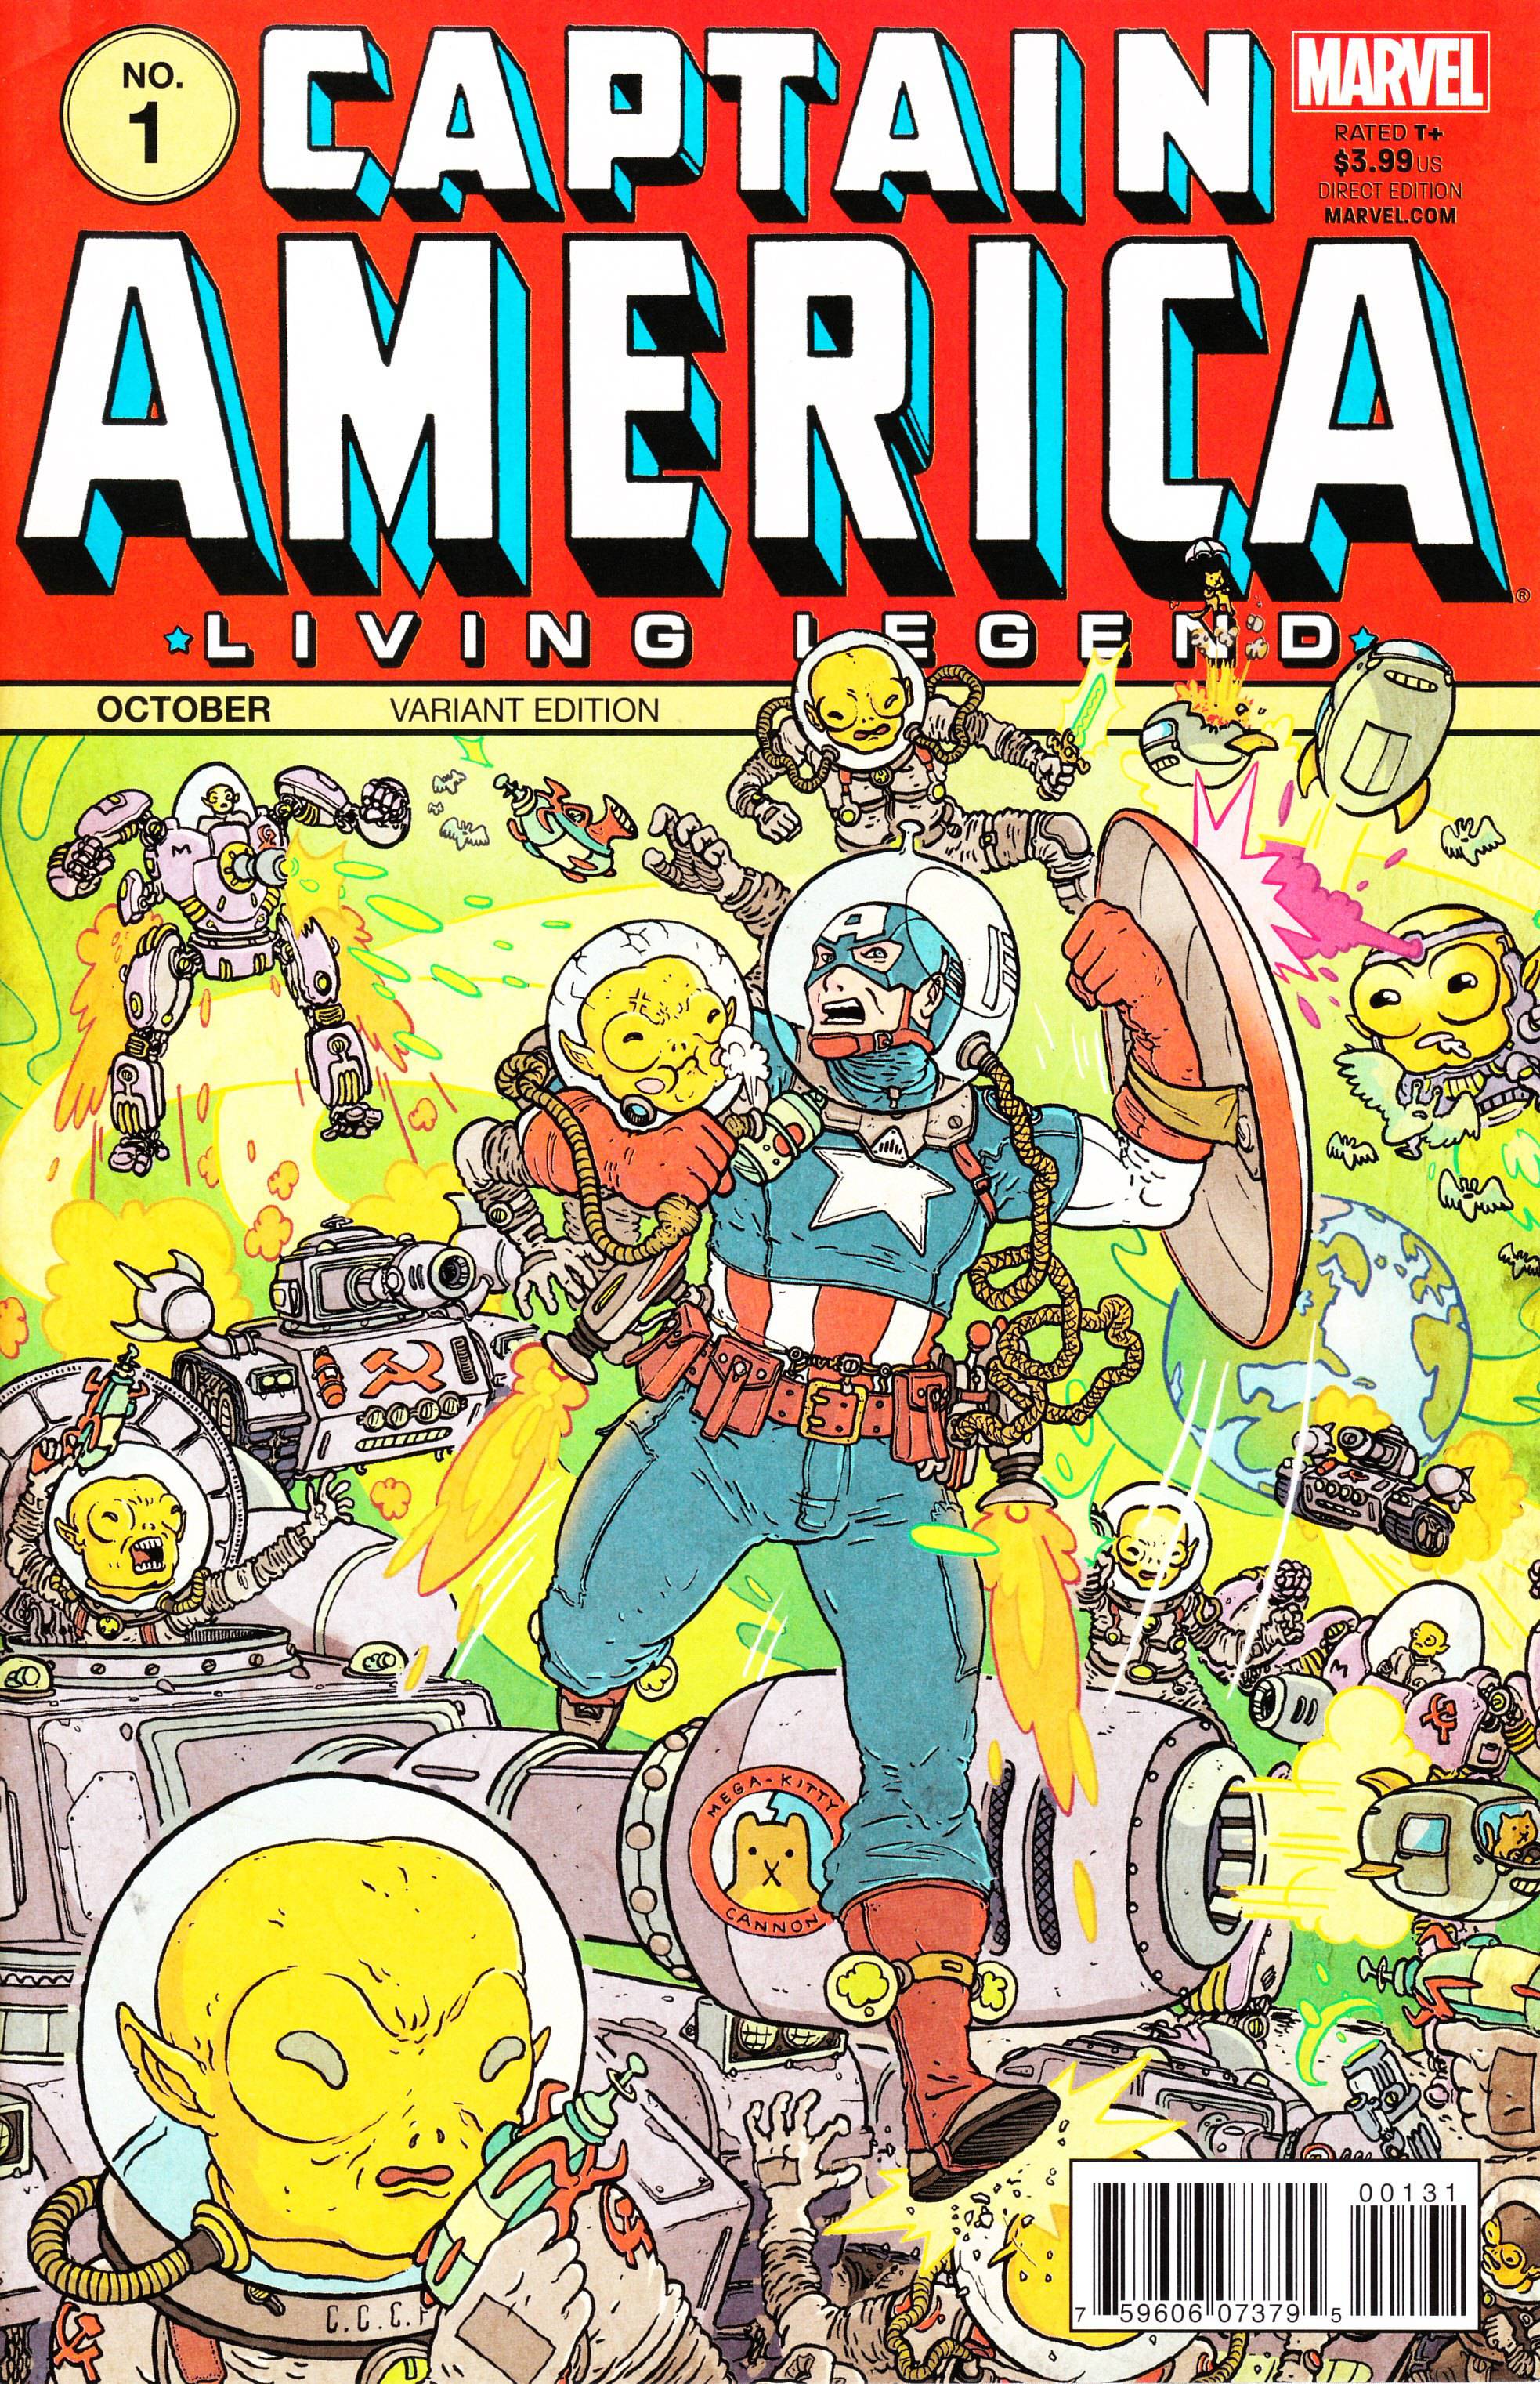 Captain America Living Legend #1 1 for 50 Incentive Vintage Variant